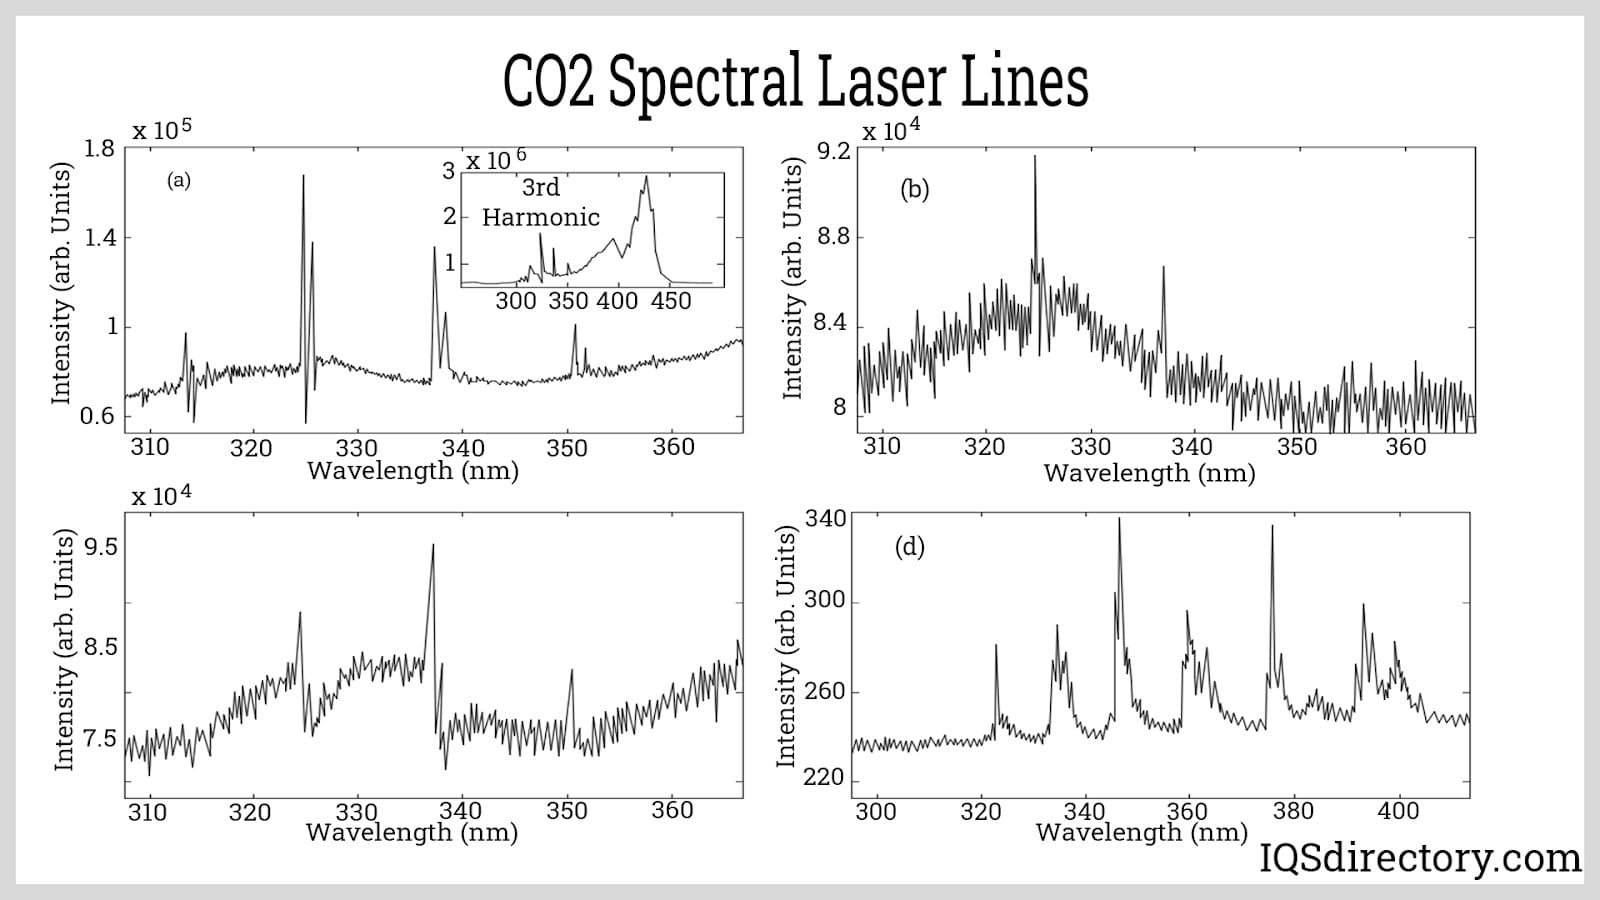 CO2 Spectral Laser Lines